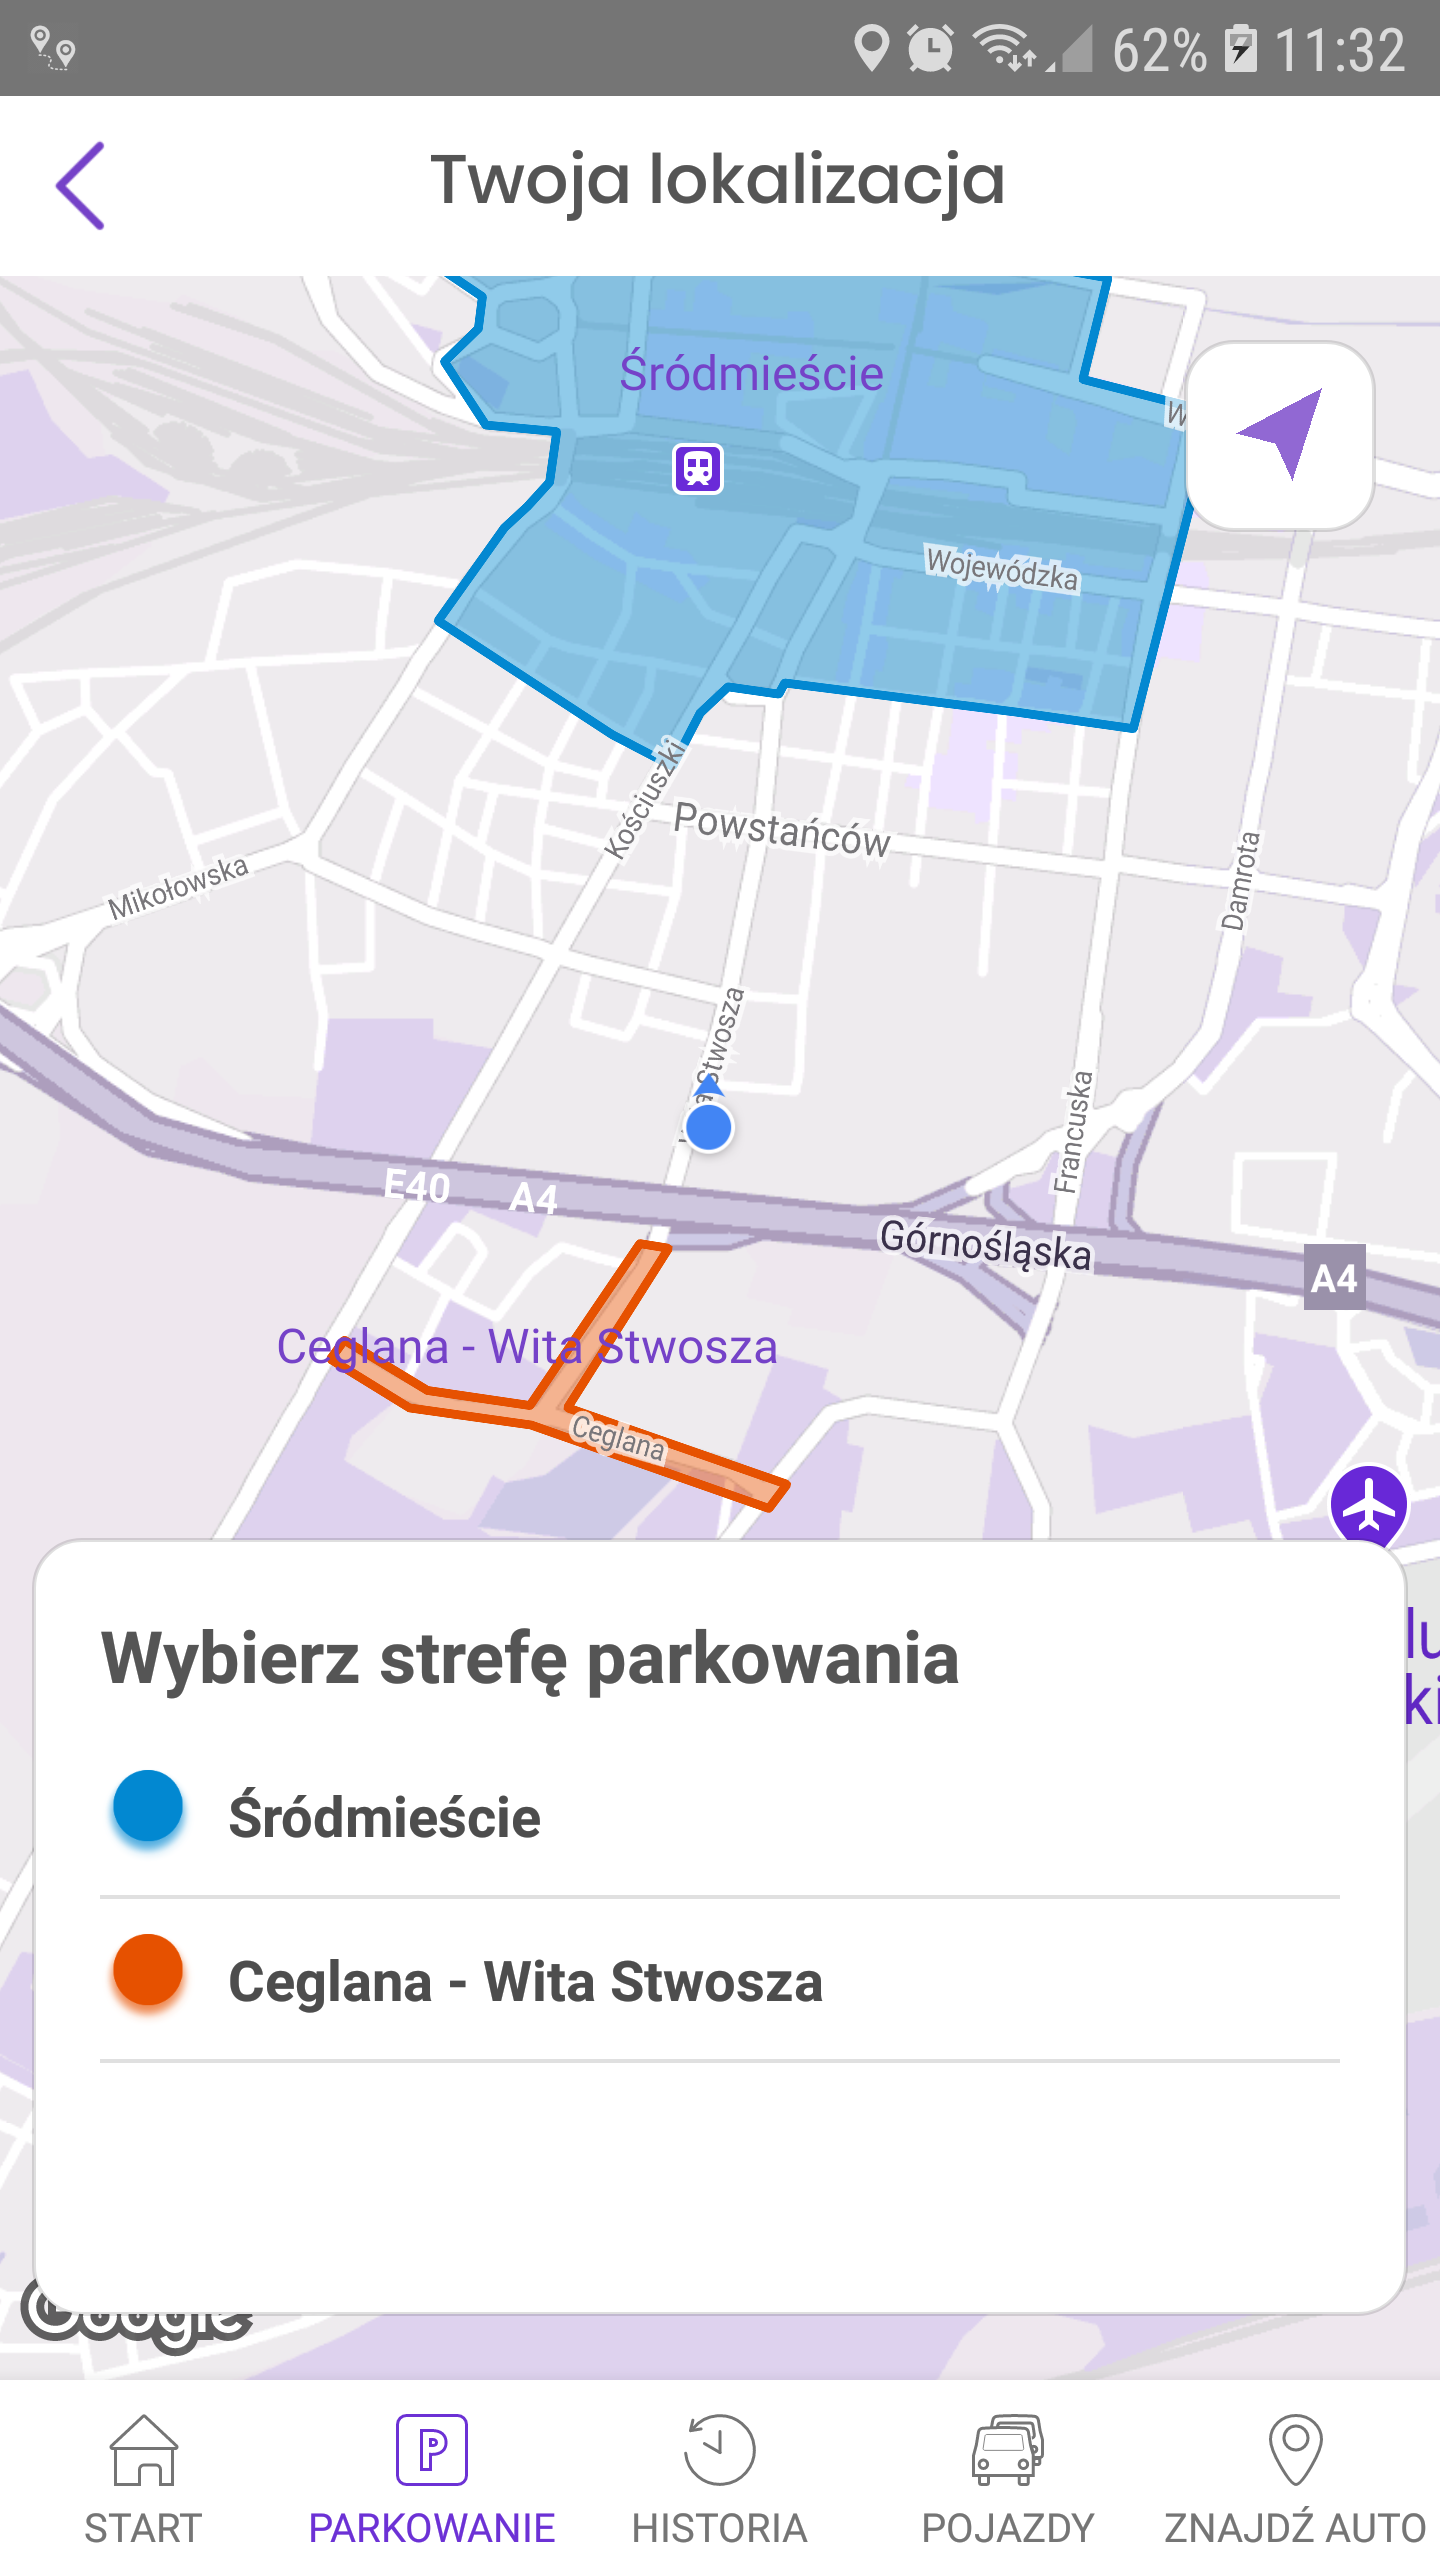 Katowice mPay strefa parkowania